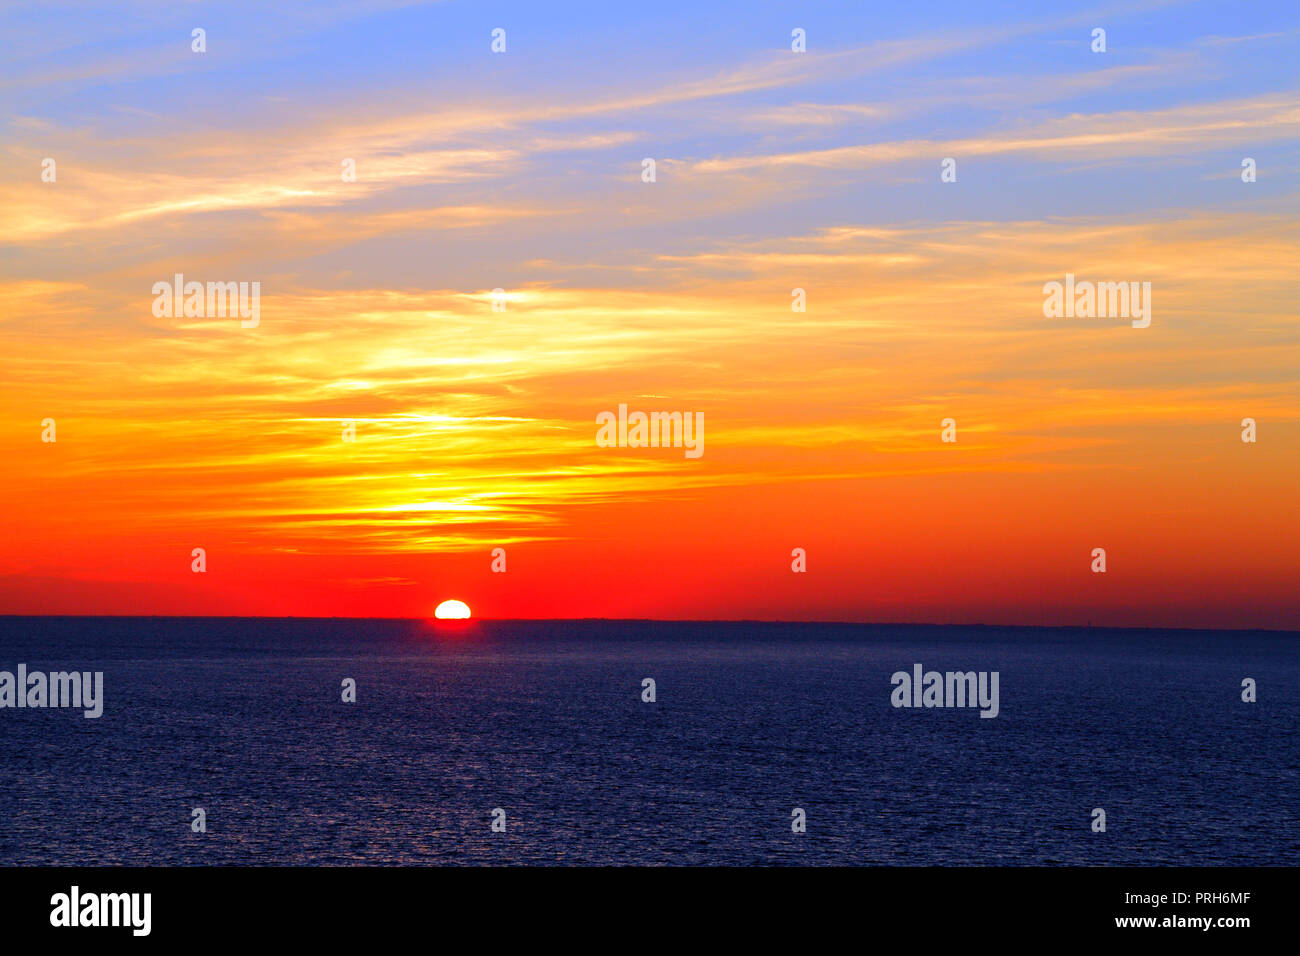 Le coucher du soleil, le cycle de lavage, de Hunstanton, Norfolk, UK, Solstice d'automne,mer, ciel, coucher de soleil Banque D'Images